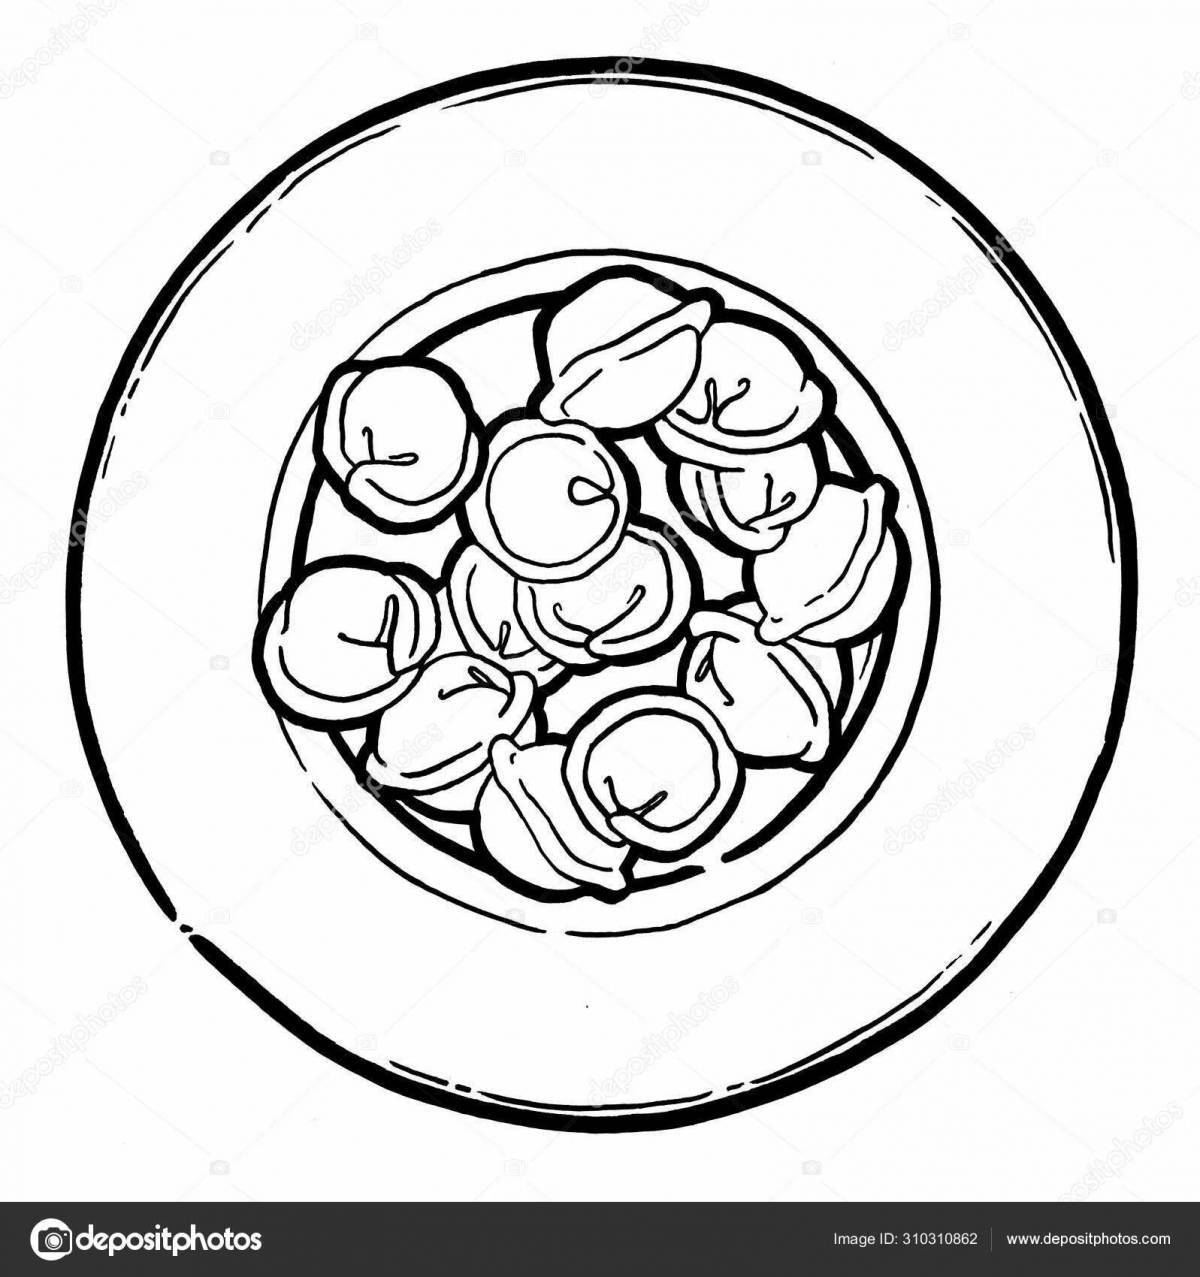 Filling dumplings in a bowl